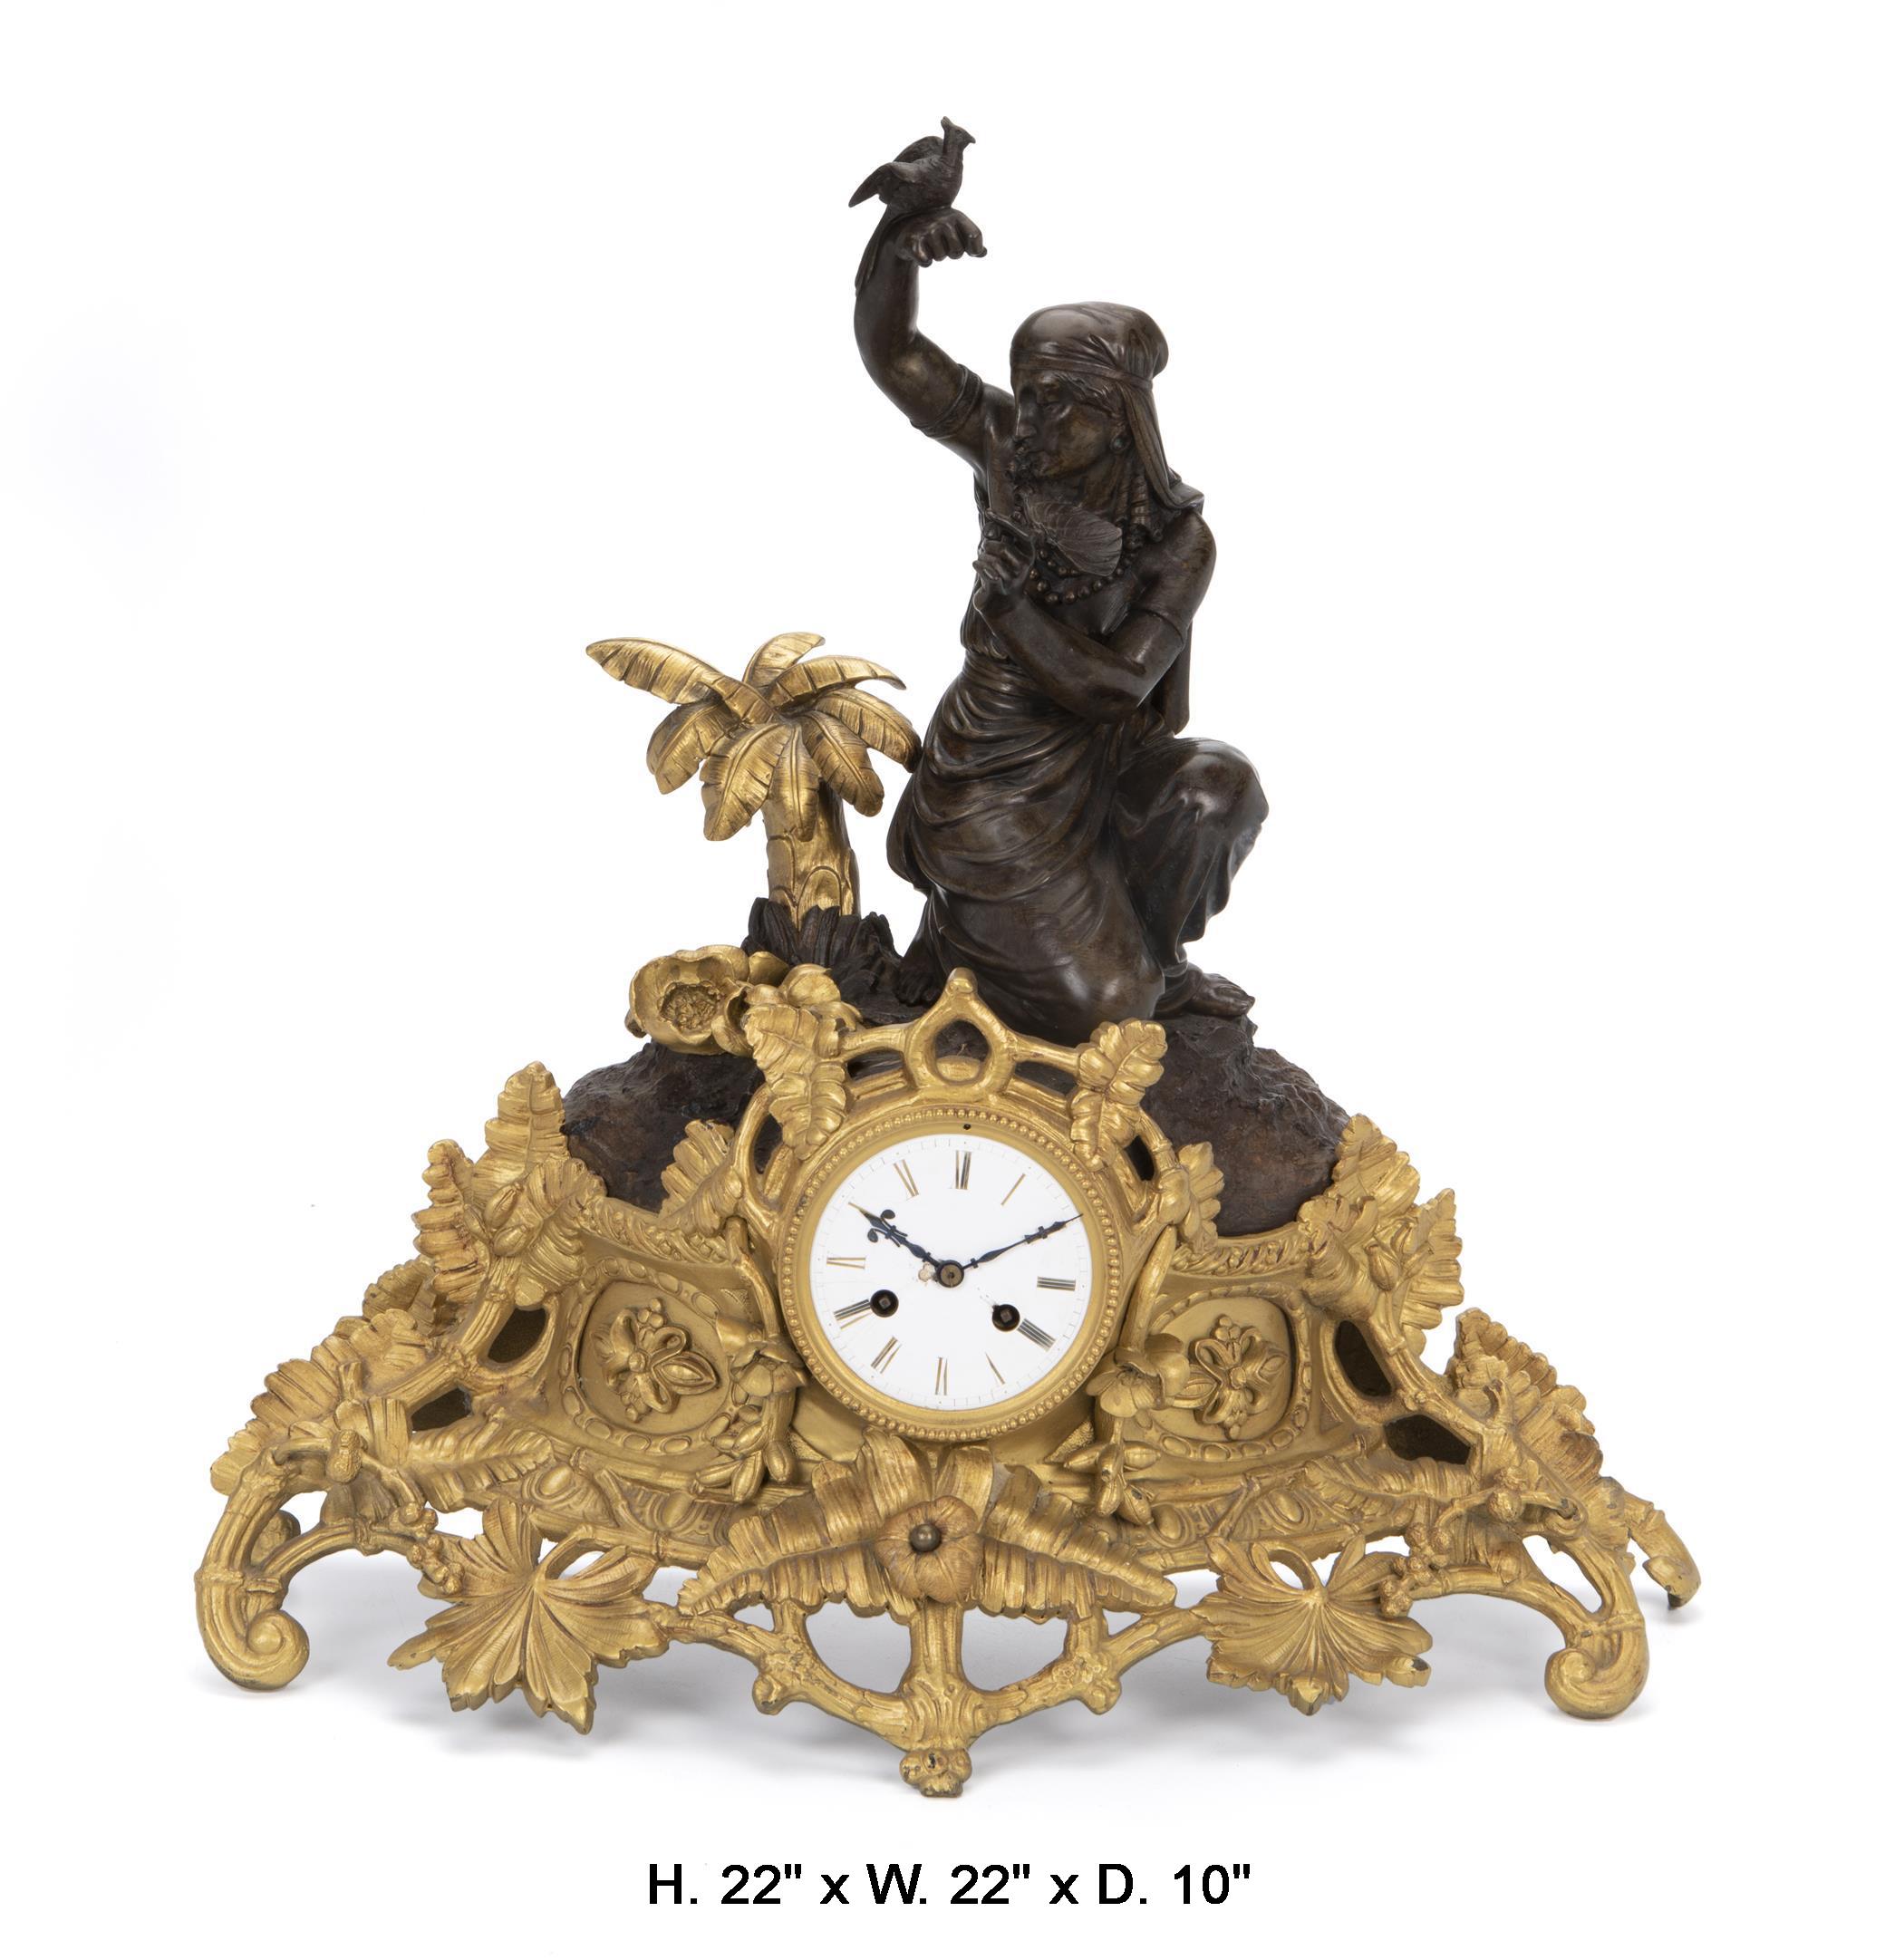 Beeindruckende französische Figurenuhr aus vergoldeter und patinierter Bronze des 19. Jahrhunderts, signiert Louis Sauvageau. 
Die schöne patinierte Bronze im Stil der Ägyptischen Wiedergeburt mit einem Vogel und einem Fächer inmitten von